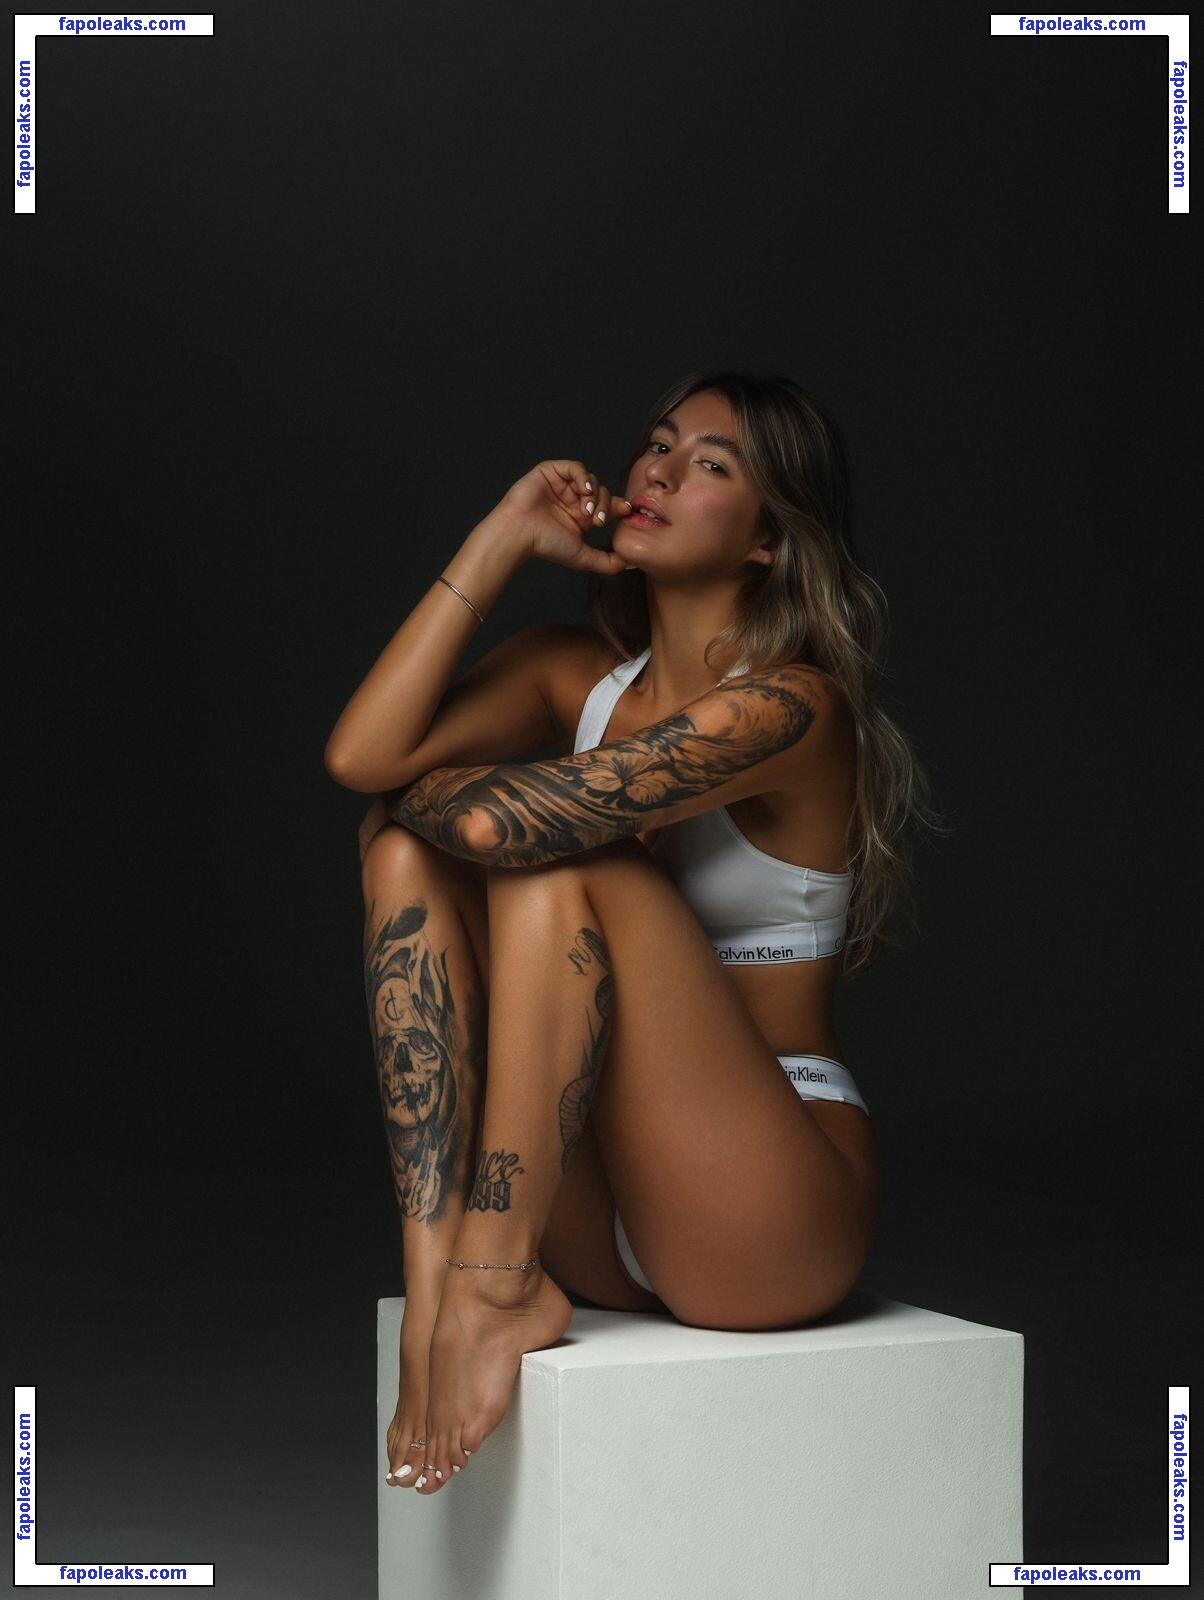 Raissa Bejar / raissaabejar nude photo #0010 from OnlyFans